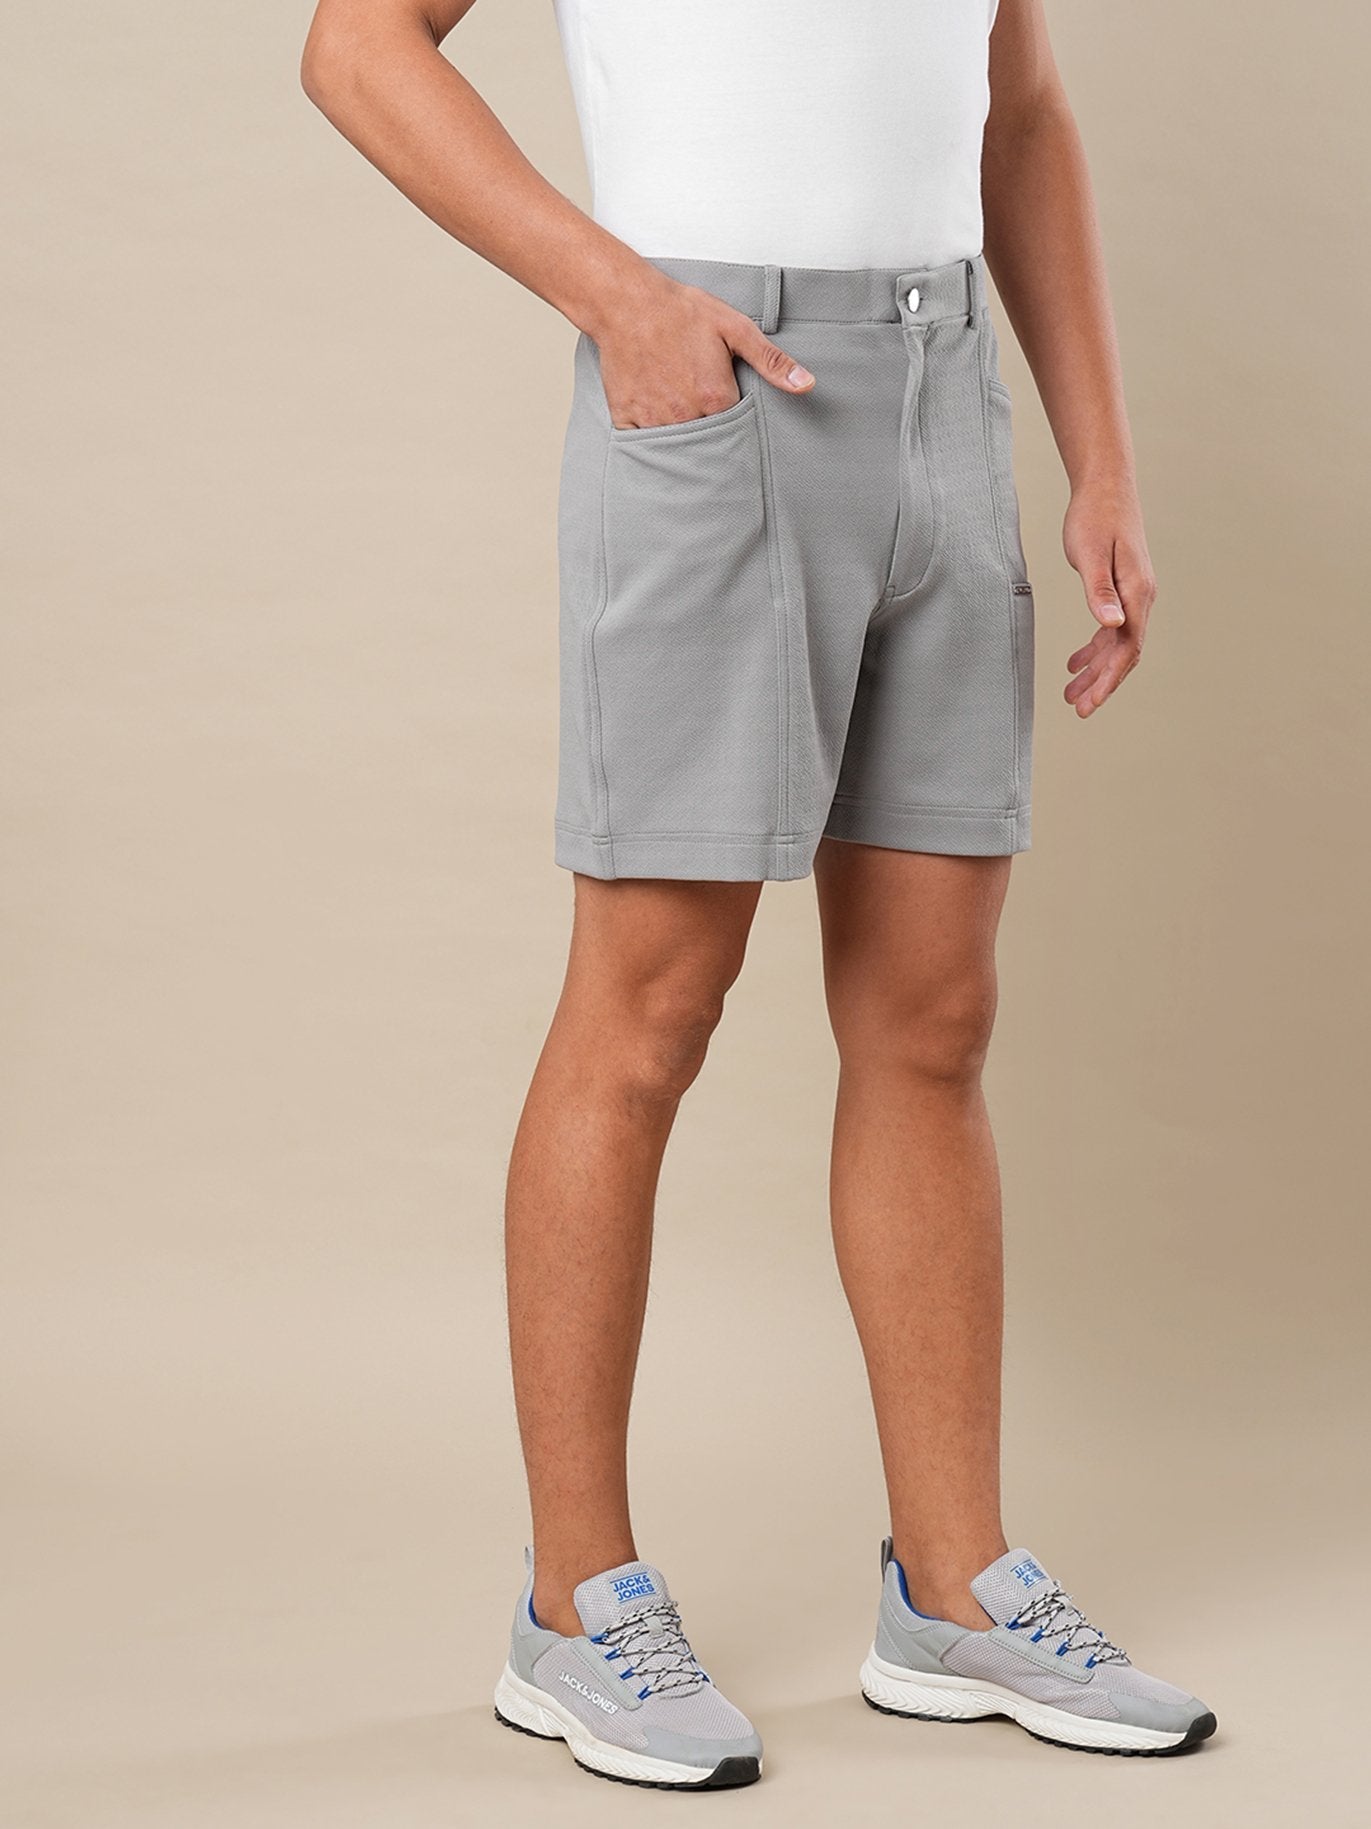 French Crepe Shorts - Styleyn